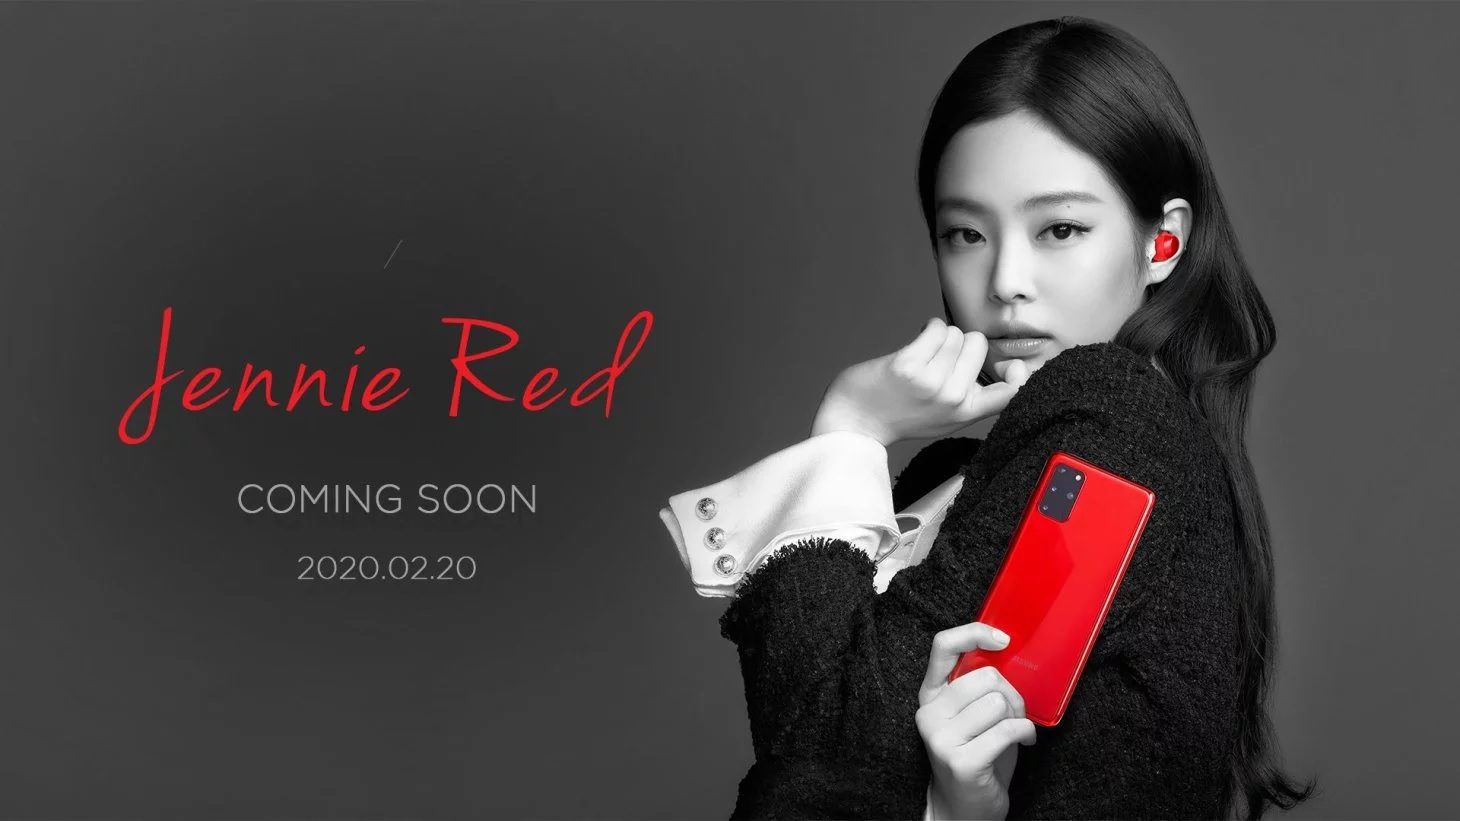 Samsung säljer en Blackpink-märkt Jenny Red Samsung Galaxy S20 + telefon och Galaxy Buds + -paket